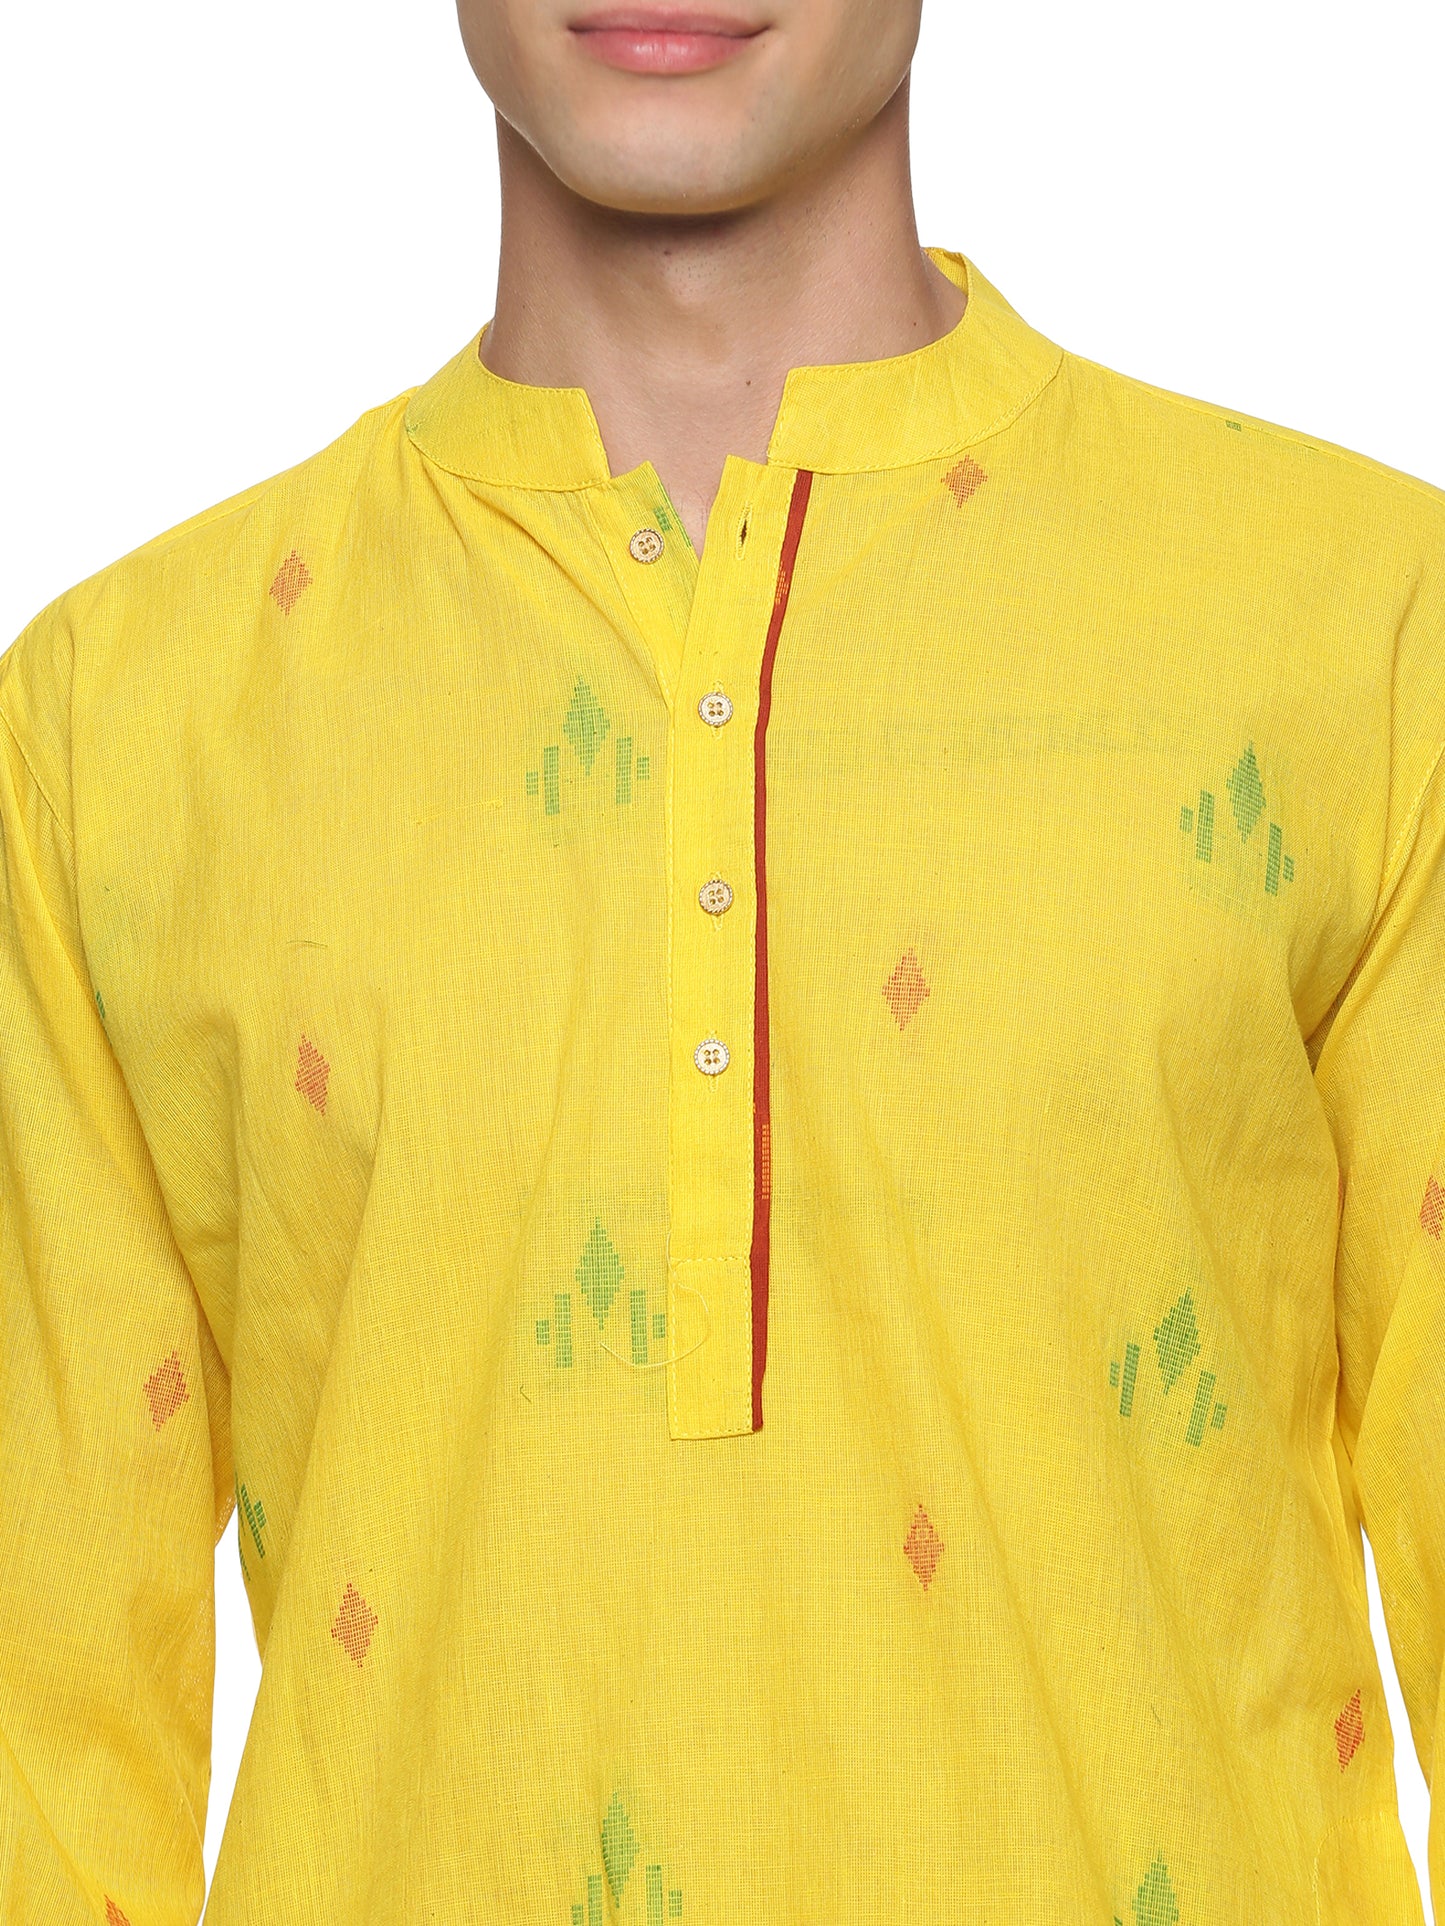 PAROKSH  Men Woven Design Pure Cotton Straight Kurta  (Yellow)